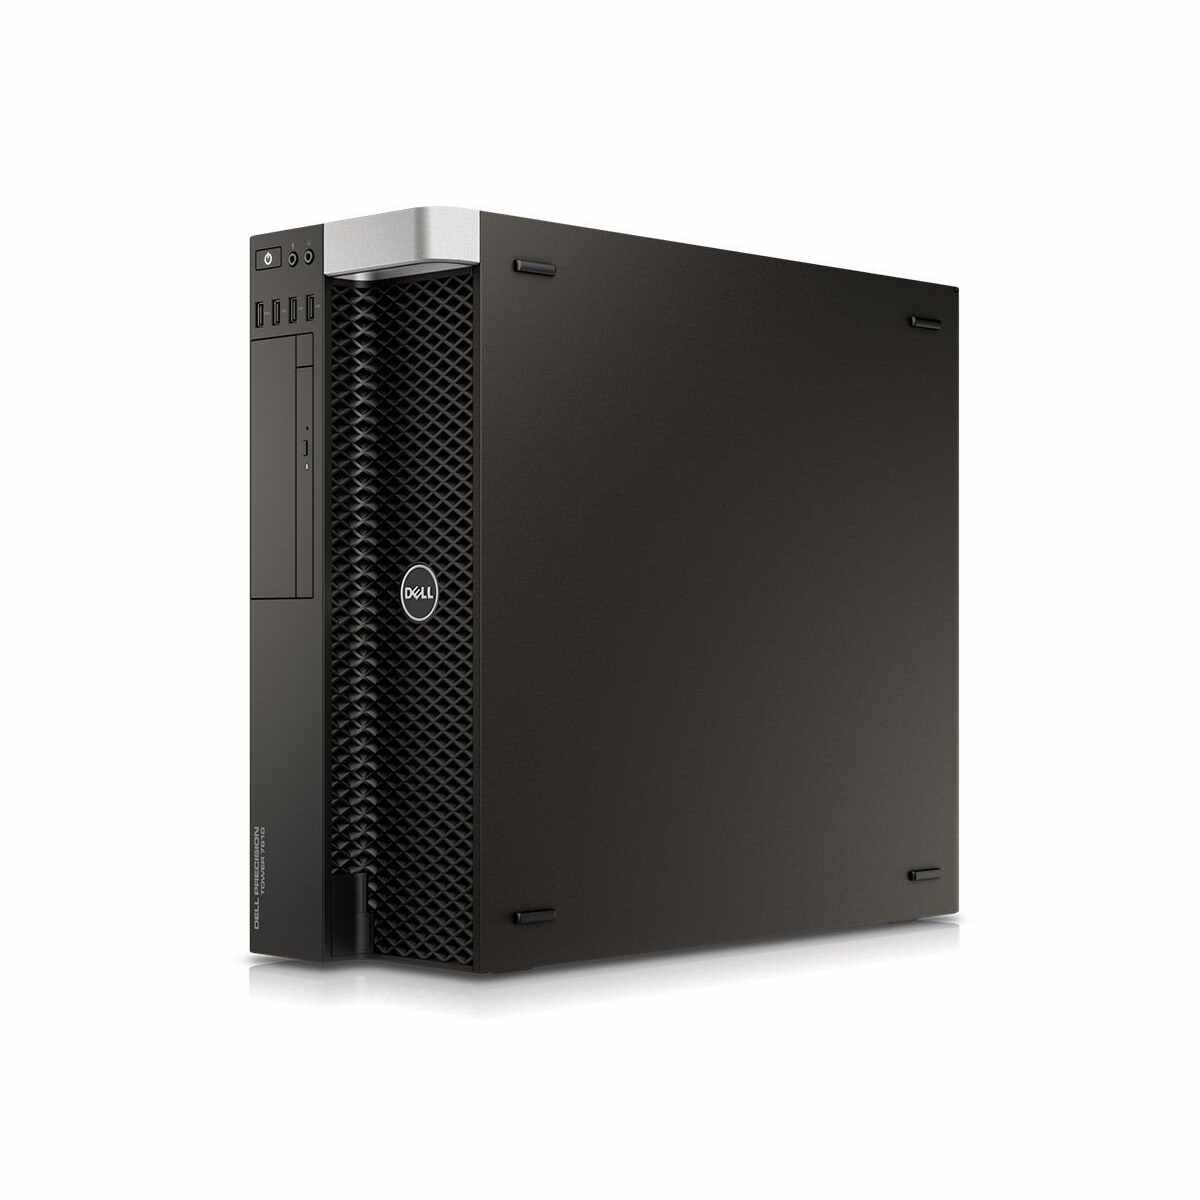 Dell, PRECISION TOWER 7810, Intel Xeon E5-2603 v3, 1.60 GHz, HDD: 500 GB, RAM: 16 GB, video: AMD FirePro W2100 (Oland), TOWER